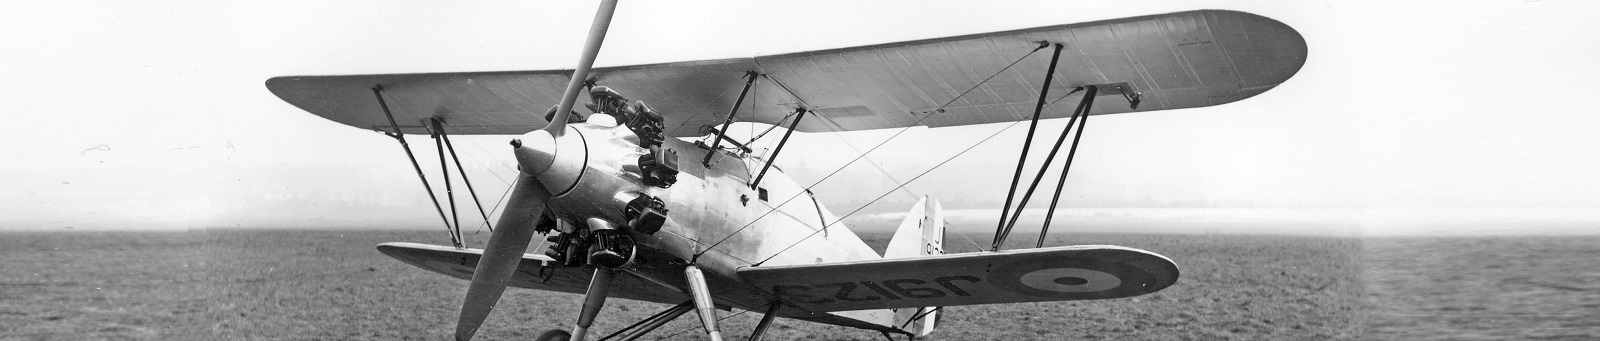 Hawker F.20/27